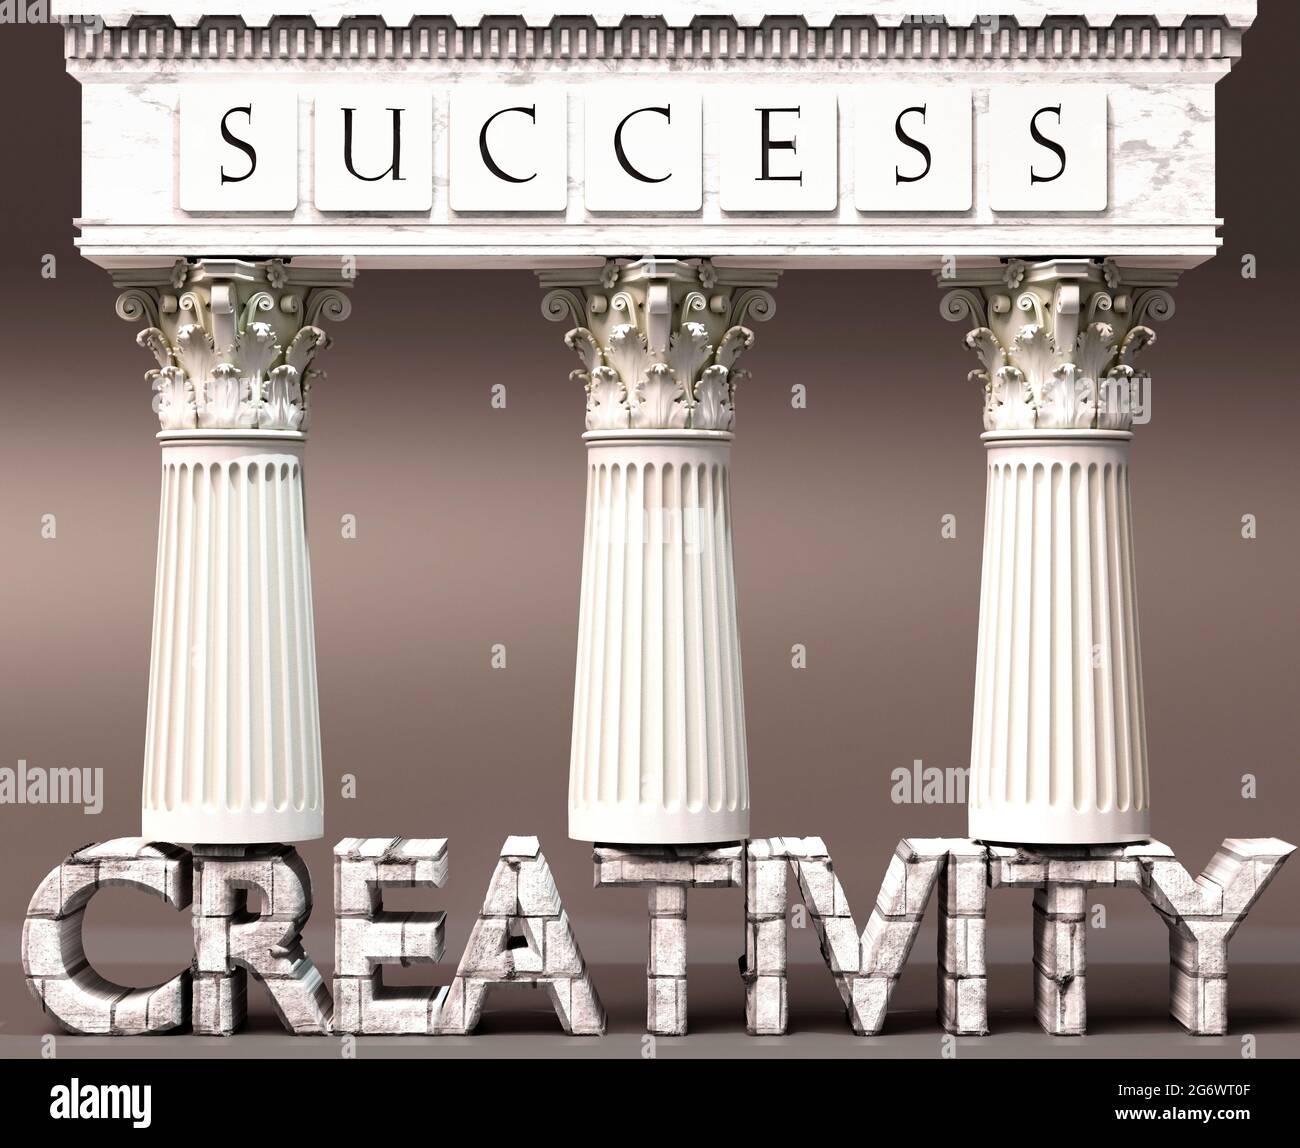 La creatività come fondamento del successo - simboleggiata da pilastri di successo sostenuti dalla creatività per dimostrare che è essenziale per raggiungere gli obiettivi e a. Foto Stock